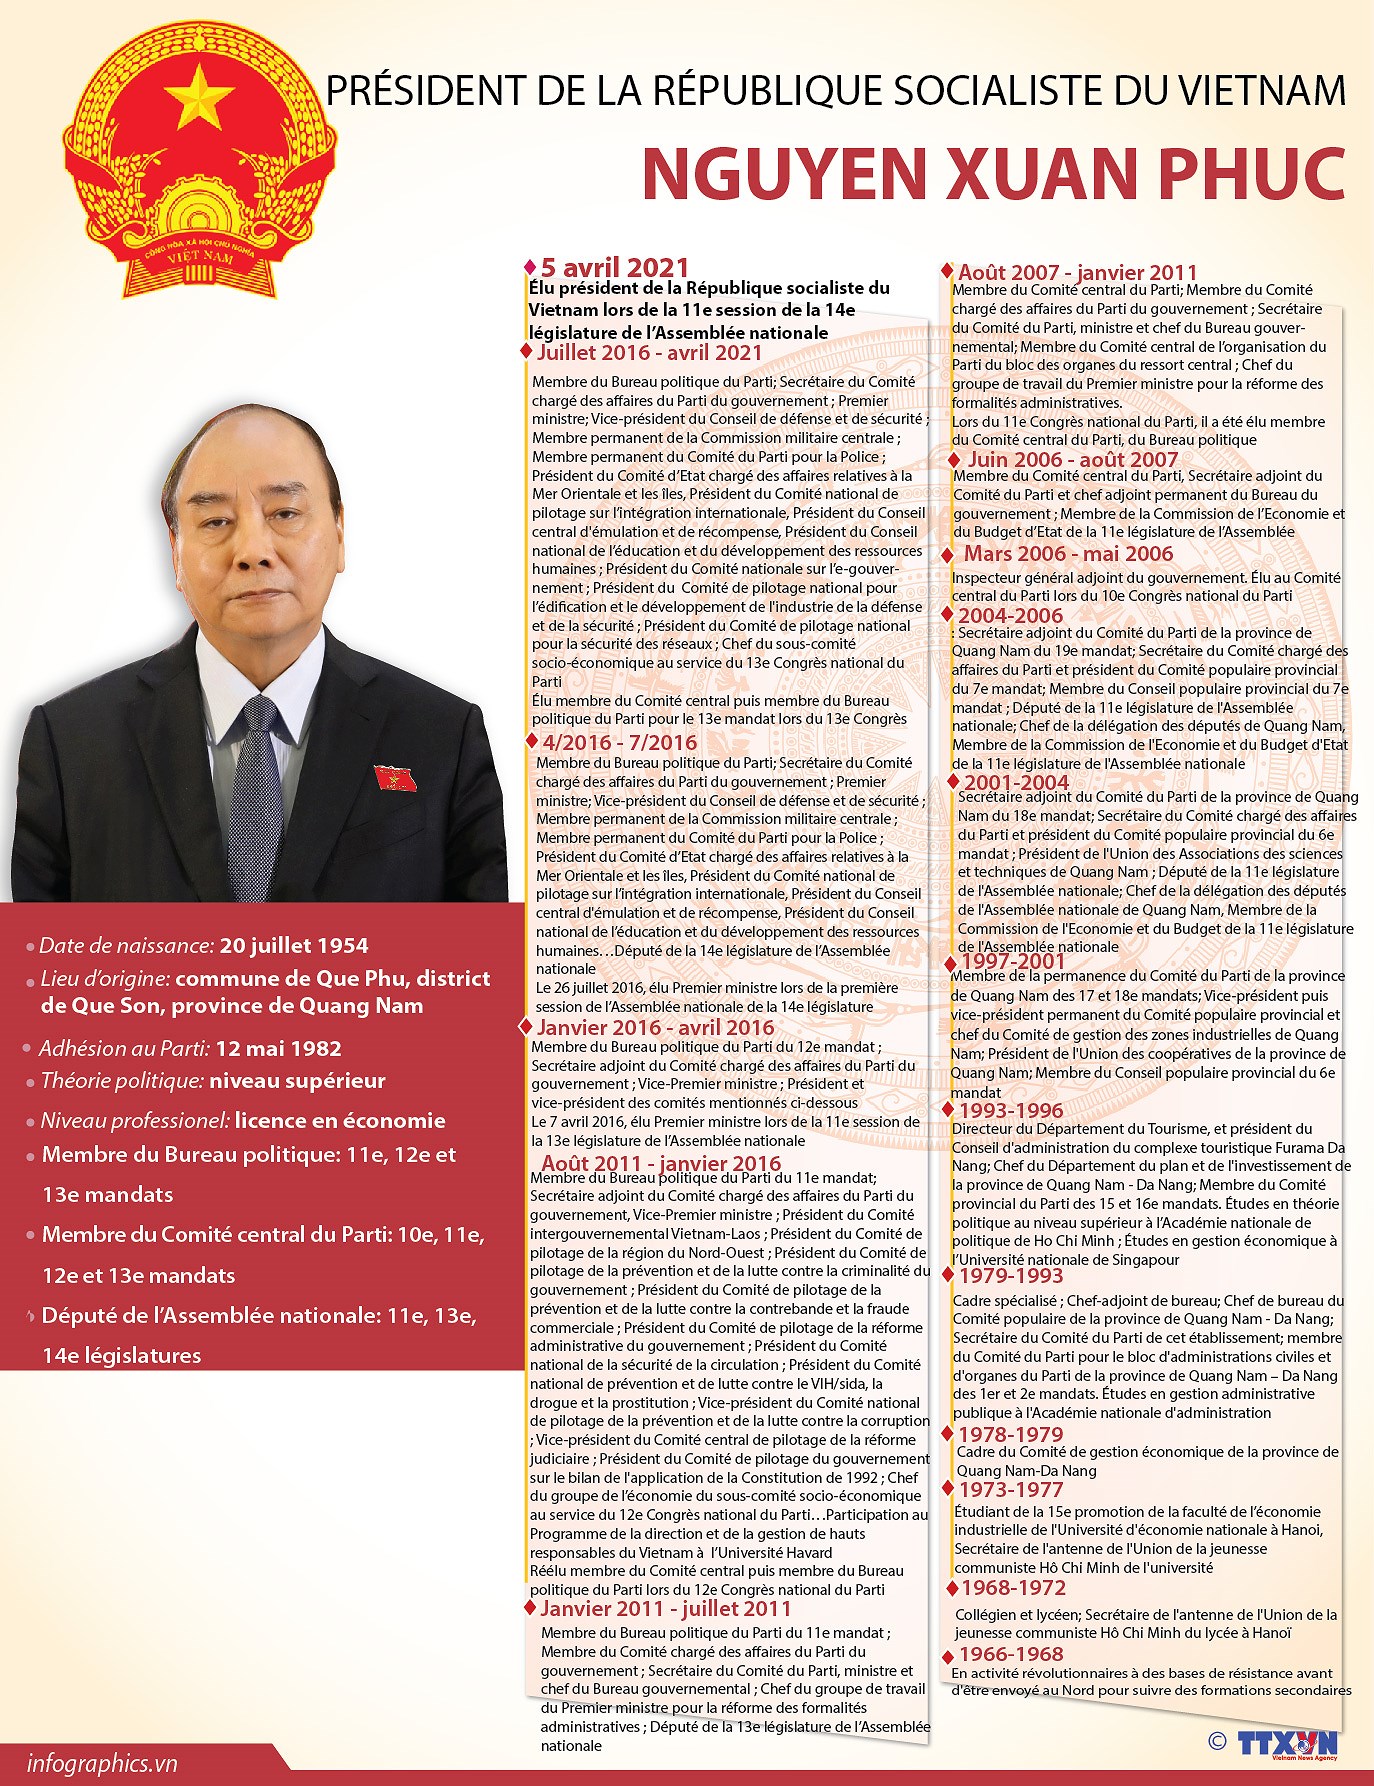 Le nouveau president de la Republique socialiste du Vietnam Nguyen Xuan Phuc hinh anh 1